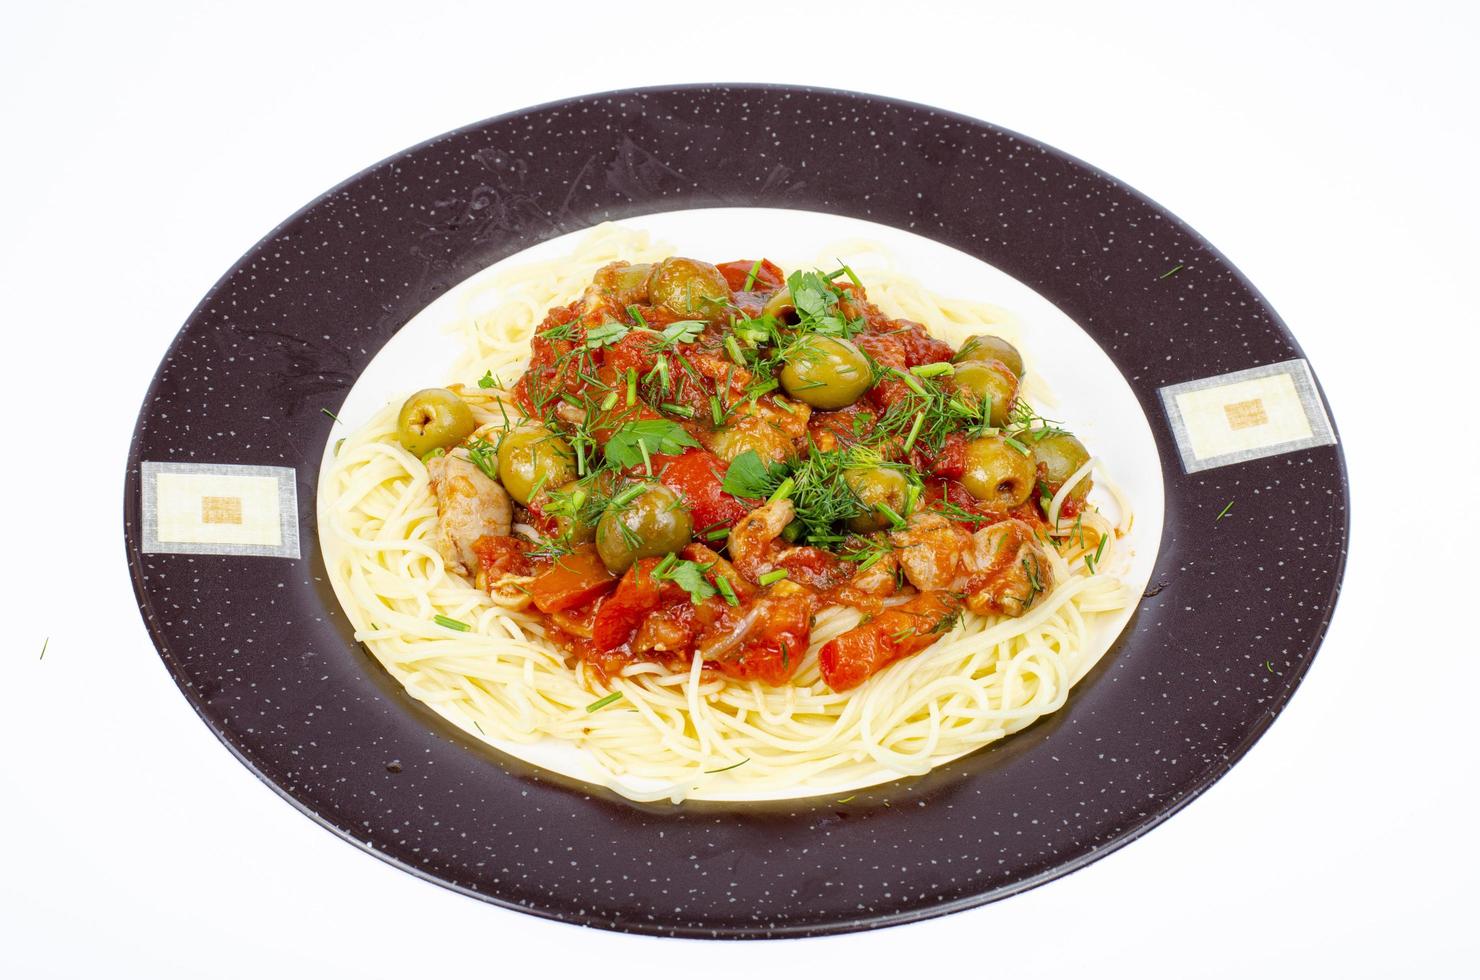 espaguete com legumes cozidos e azeitonas verdes. foto de estúdio